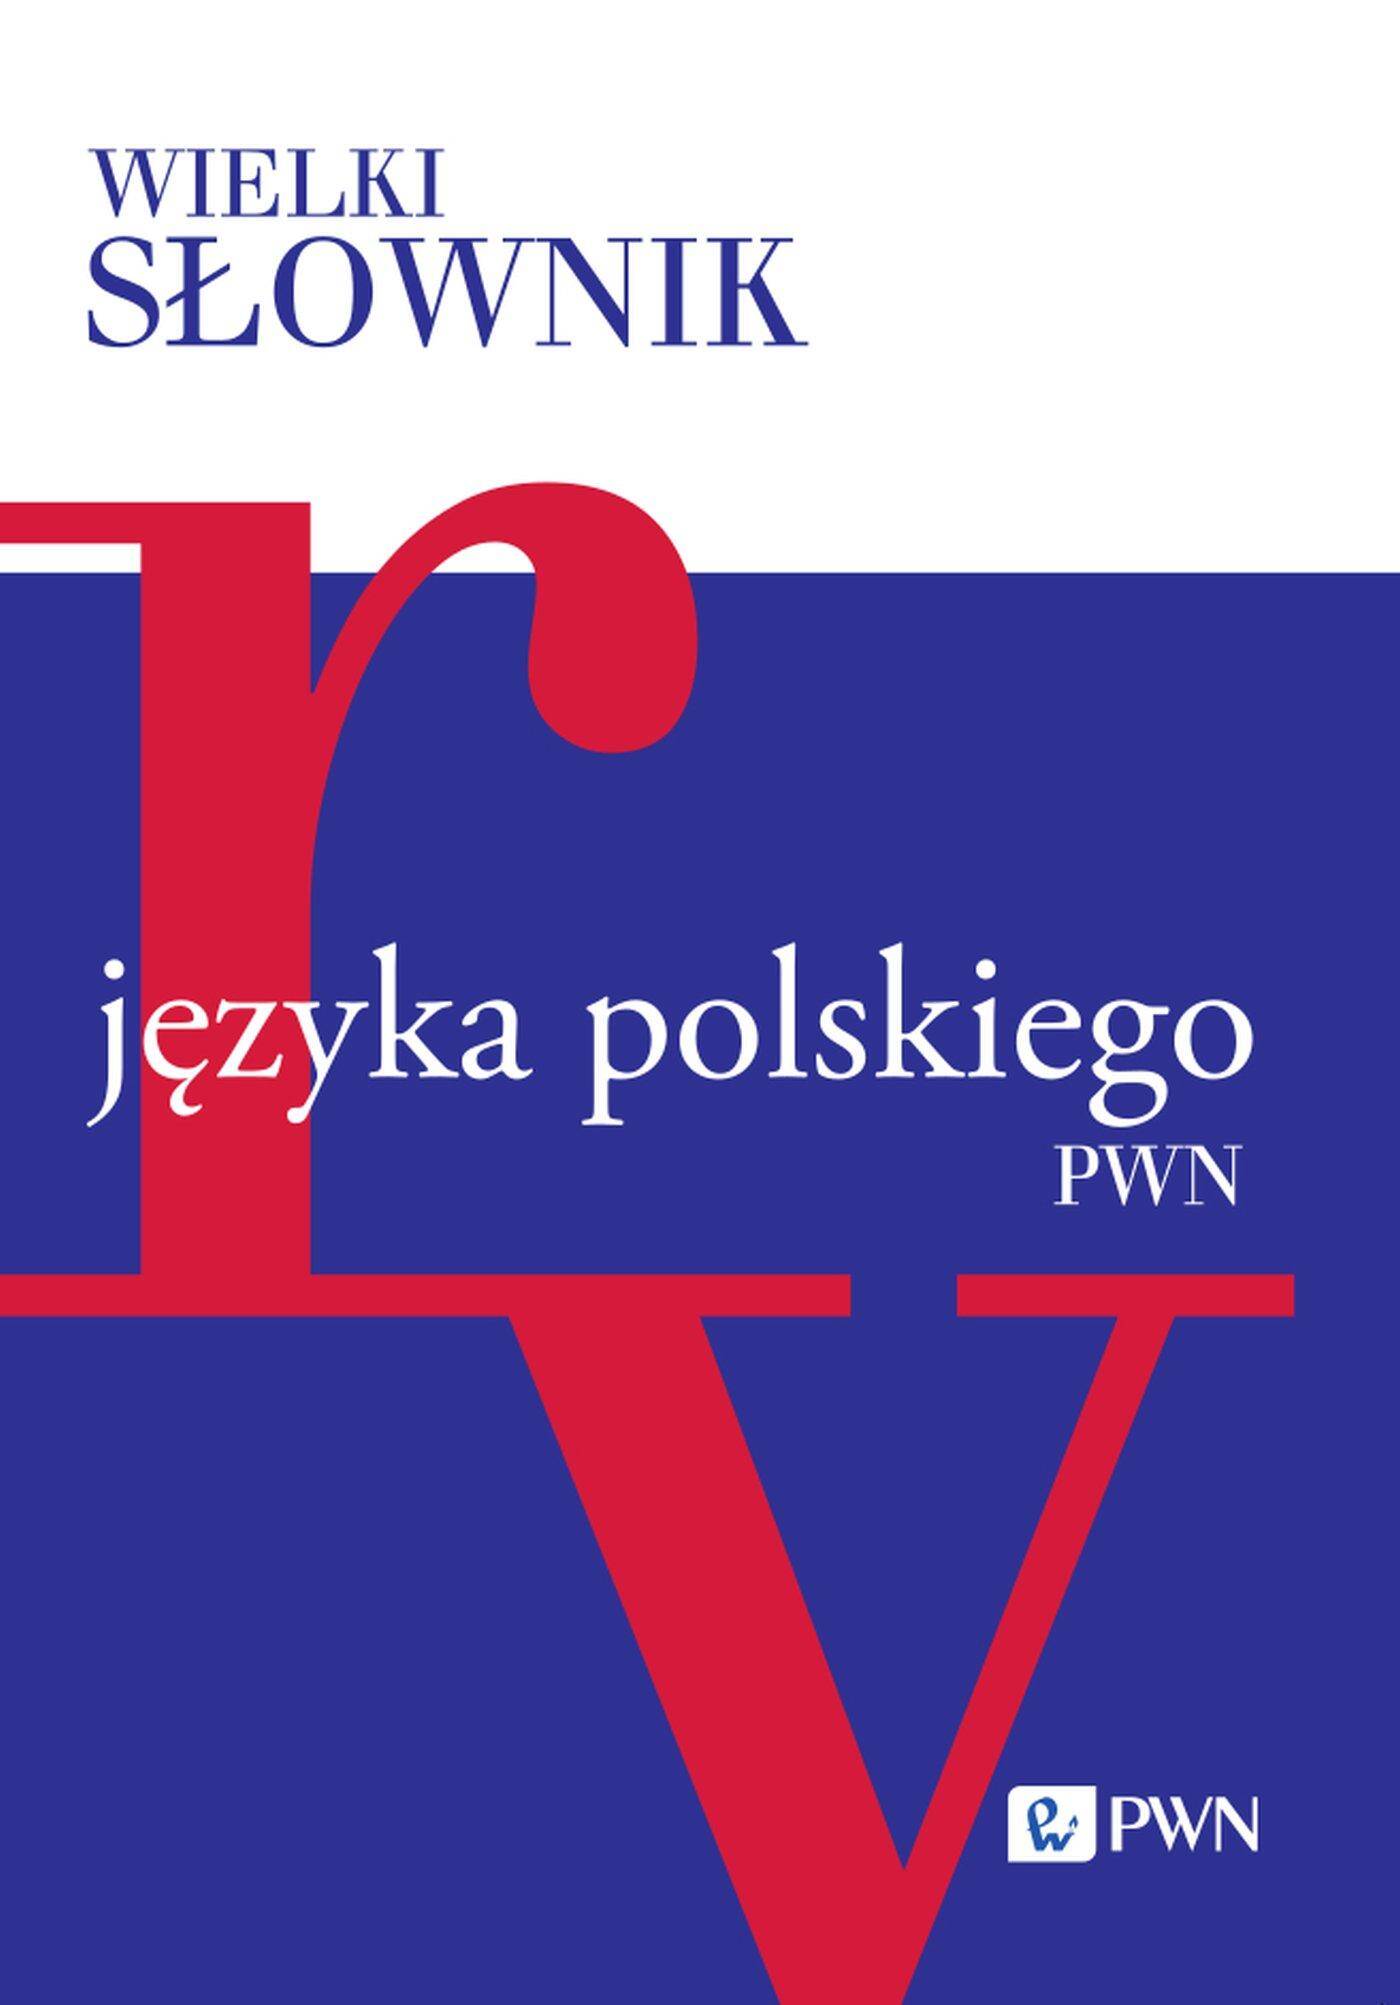 Wielki słownik języka polskiego PWN Tom IV